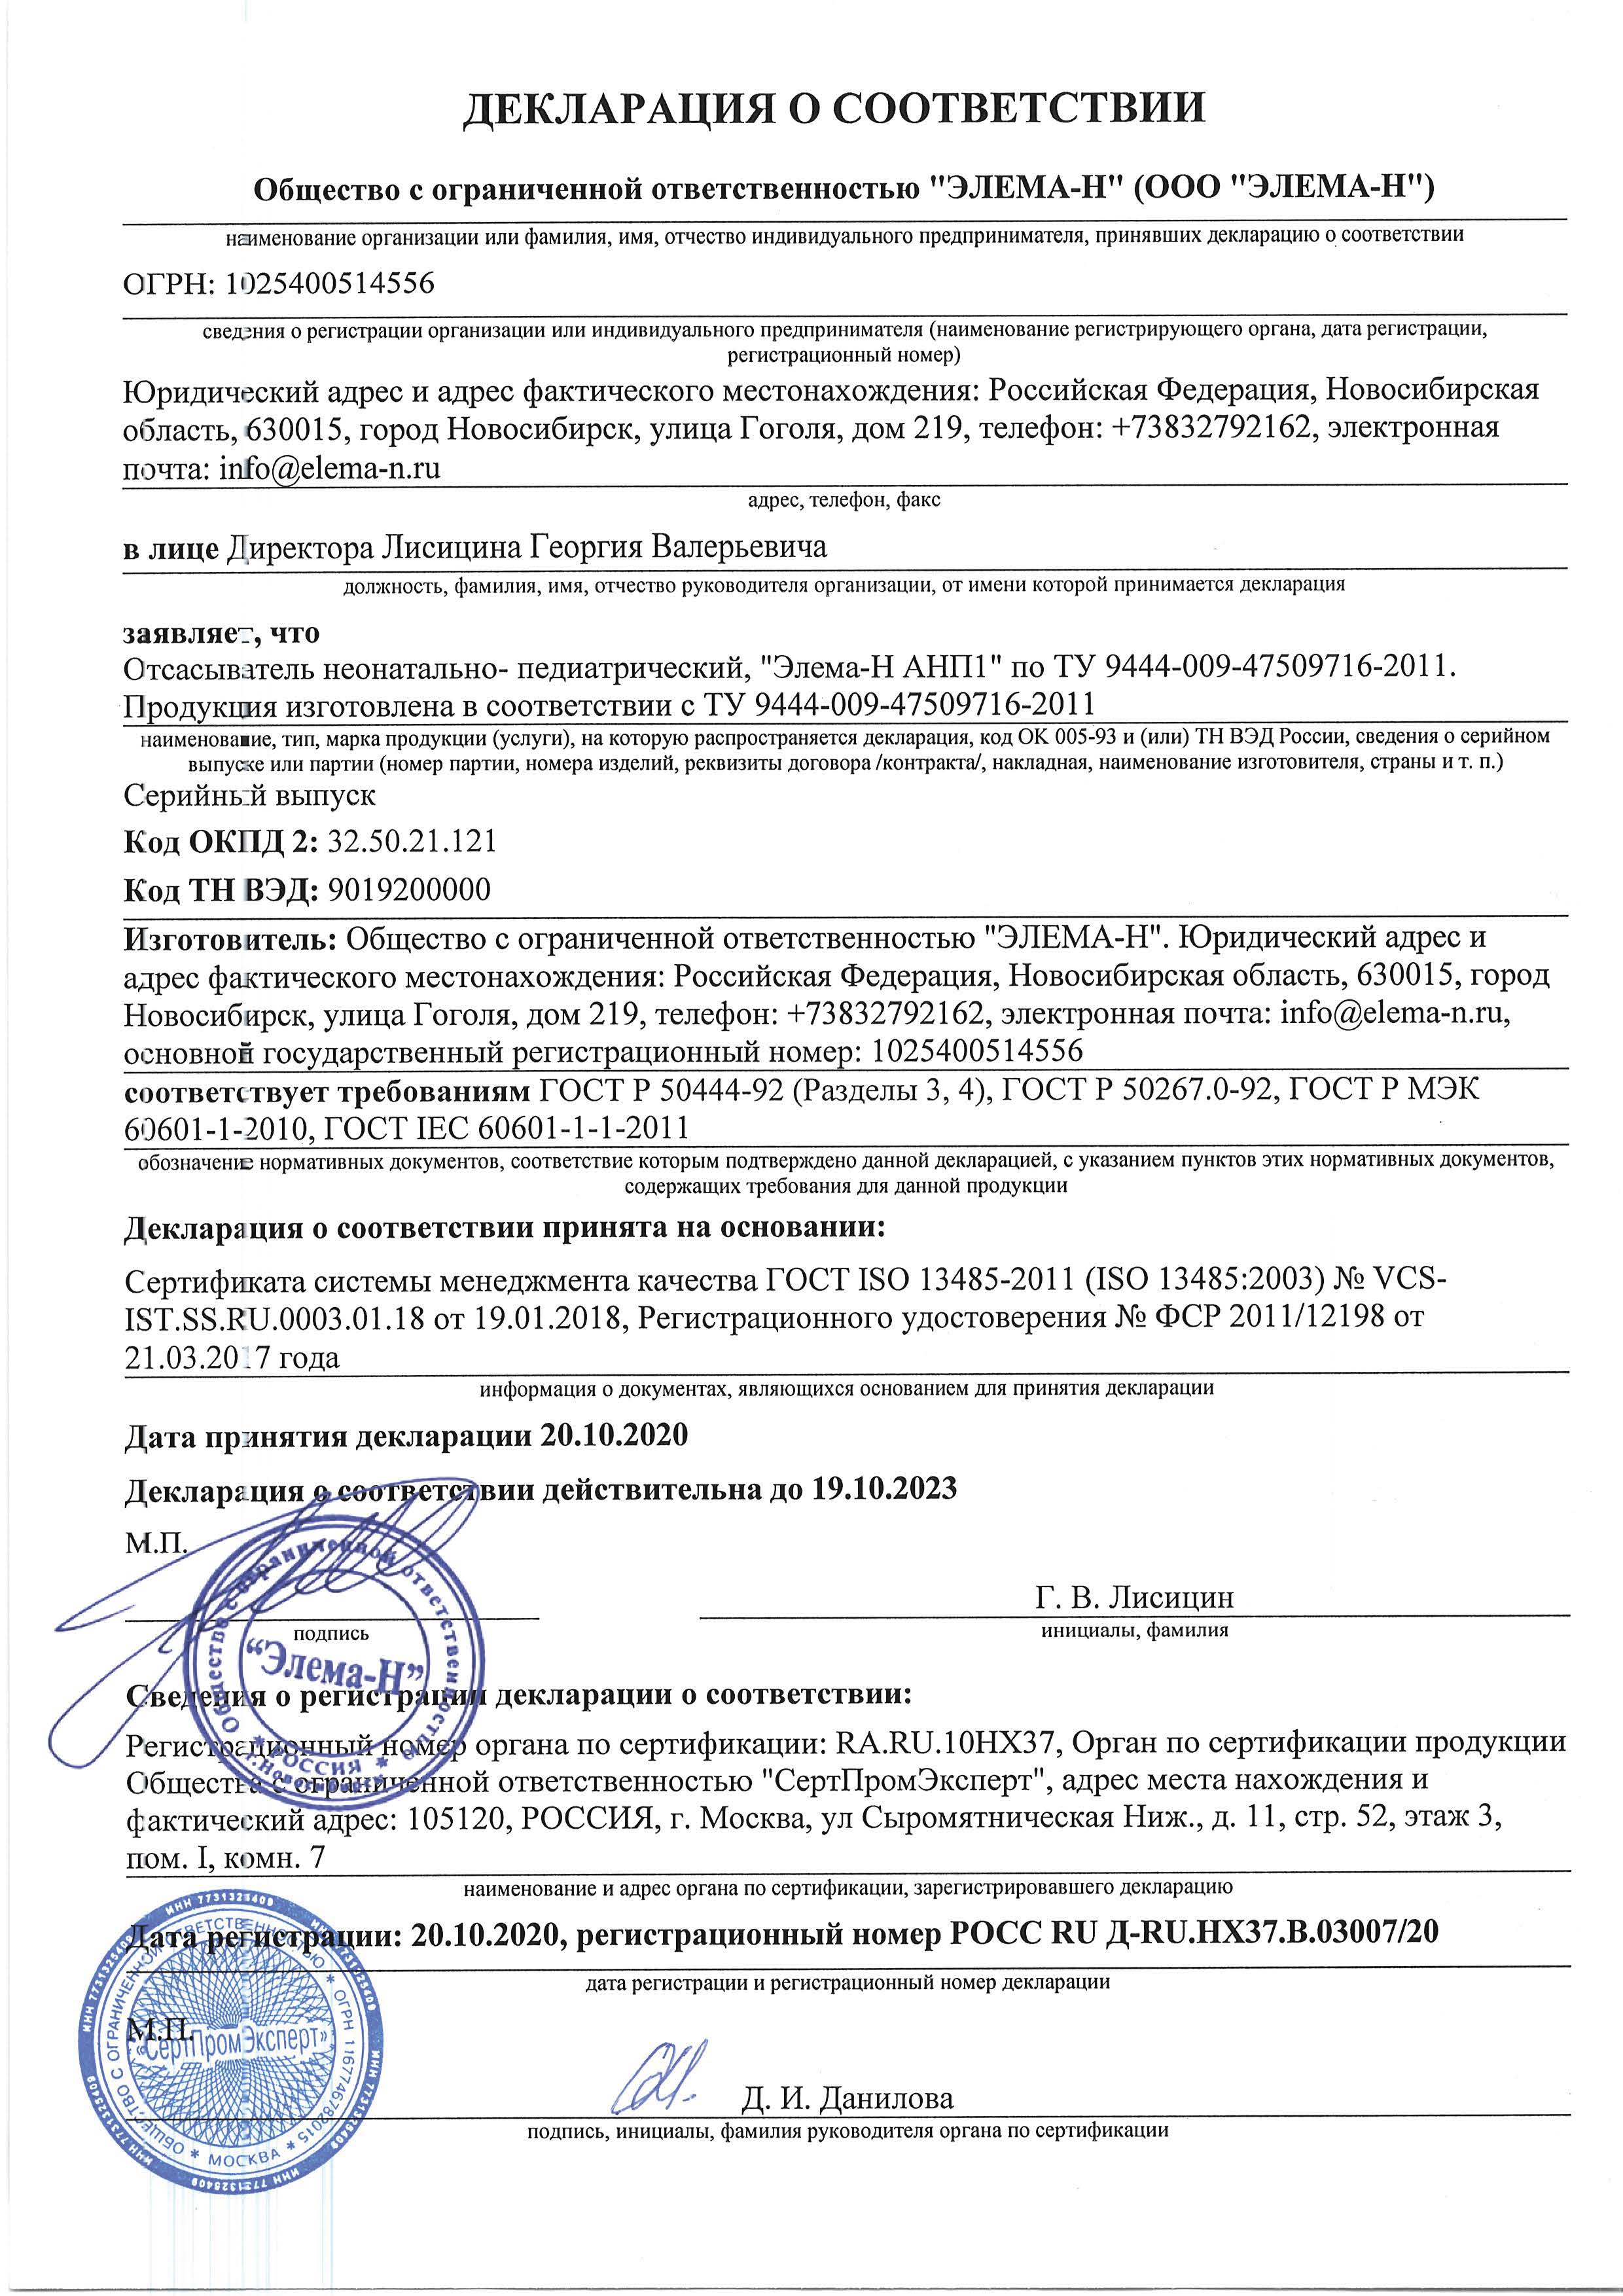 Сертификат соответствия Элема-Н АНП1